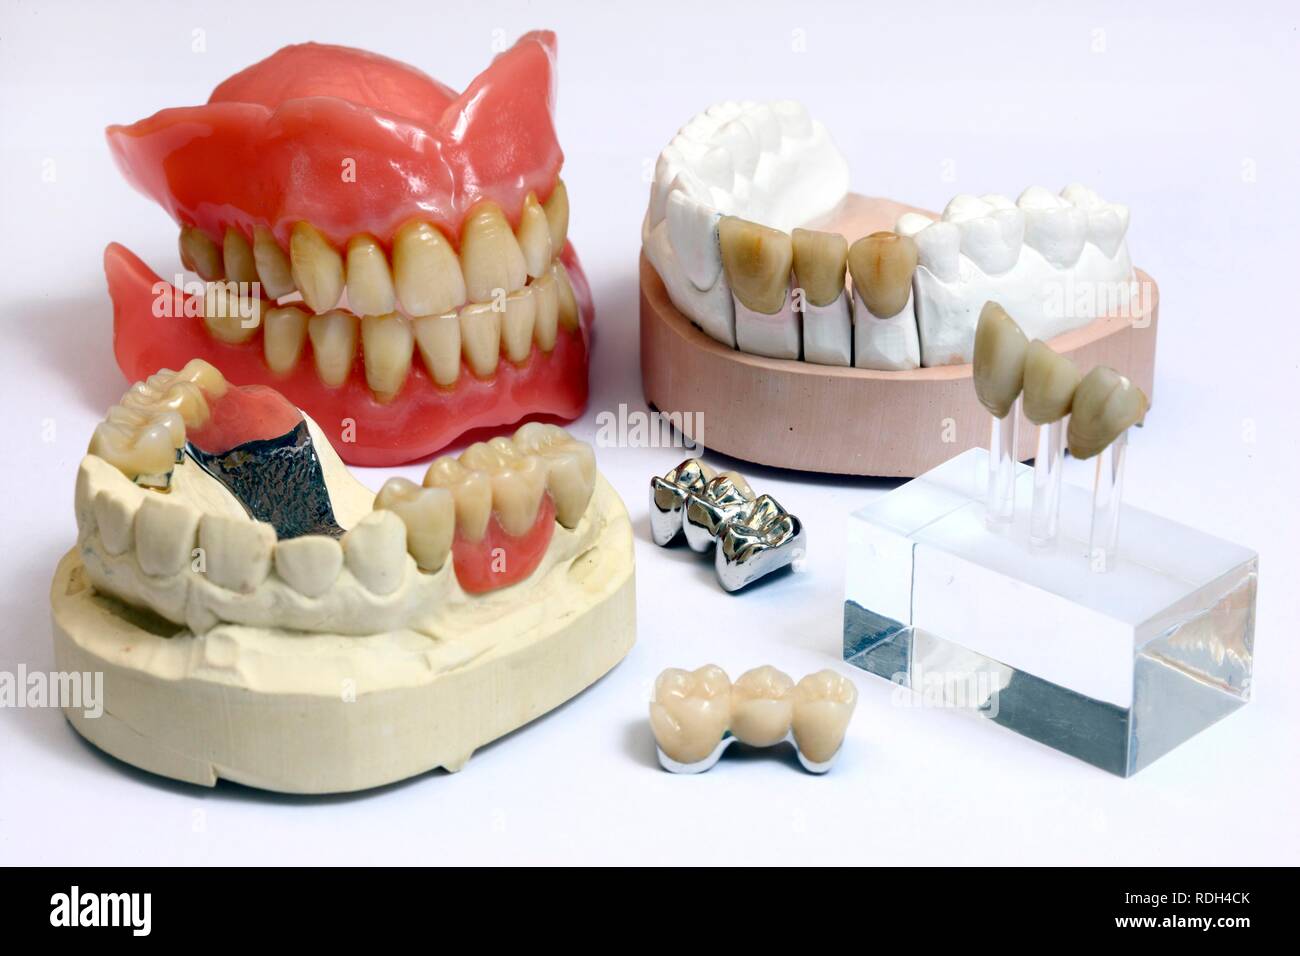 Dental Labor, Herstellung von Zahnersatz durch ein Handwerksmeister, komplette Prothese, hinten links, ausziehbare Krone Stockfoto